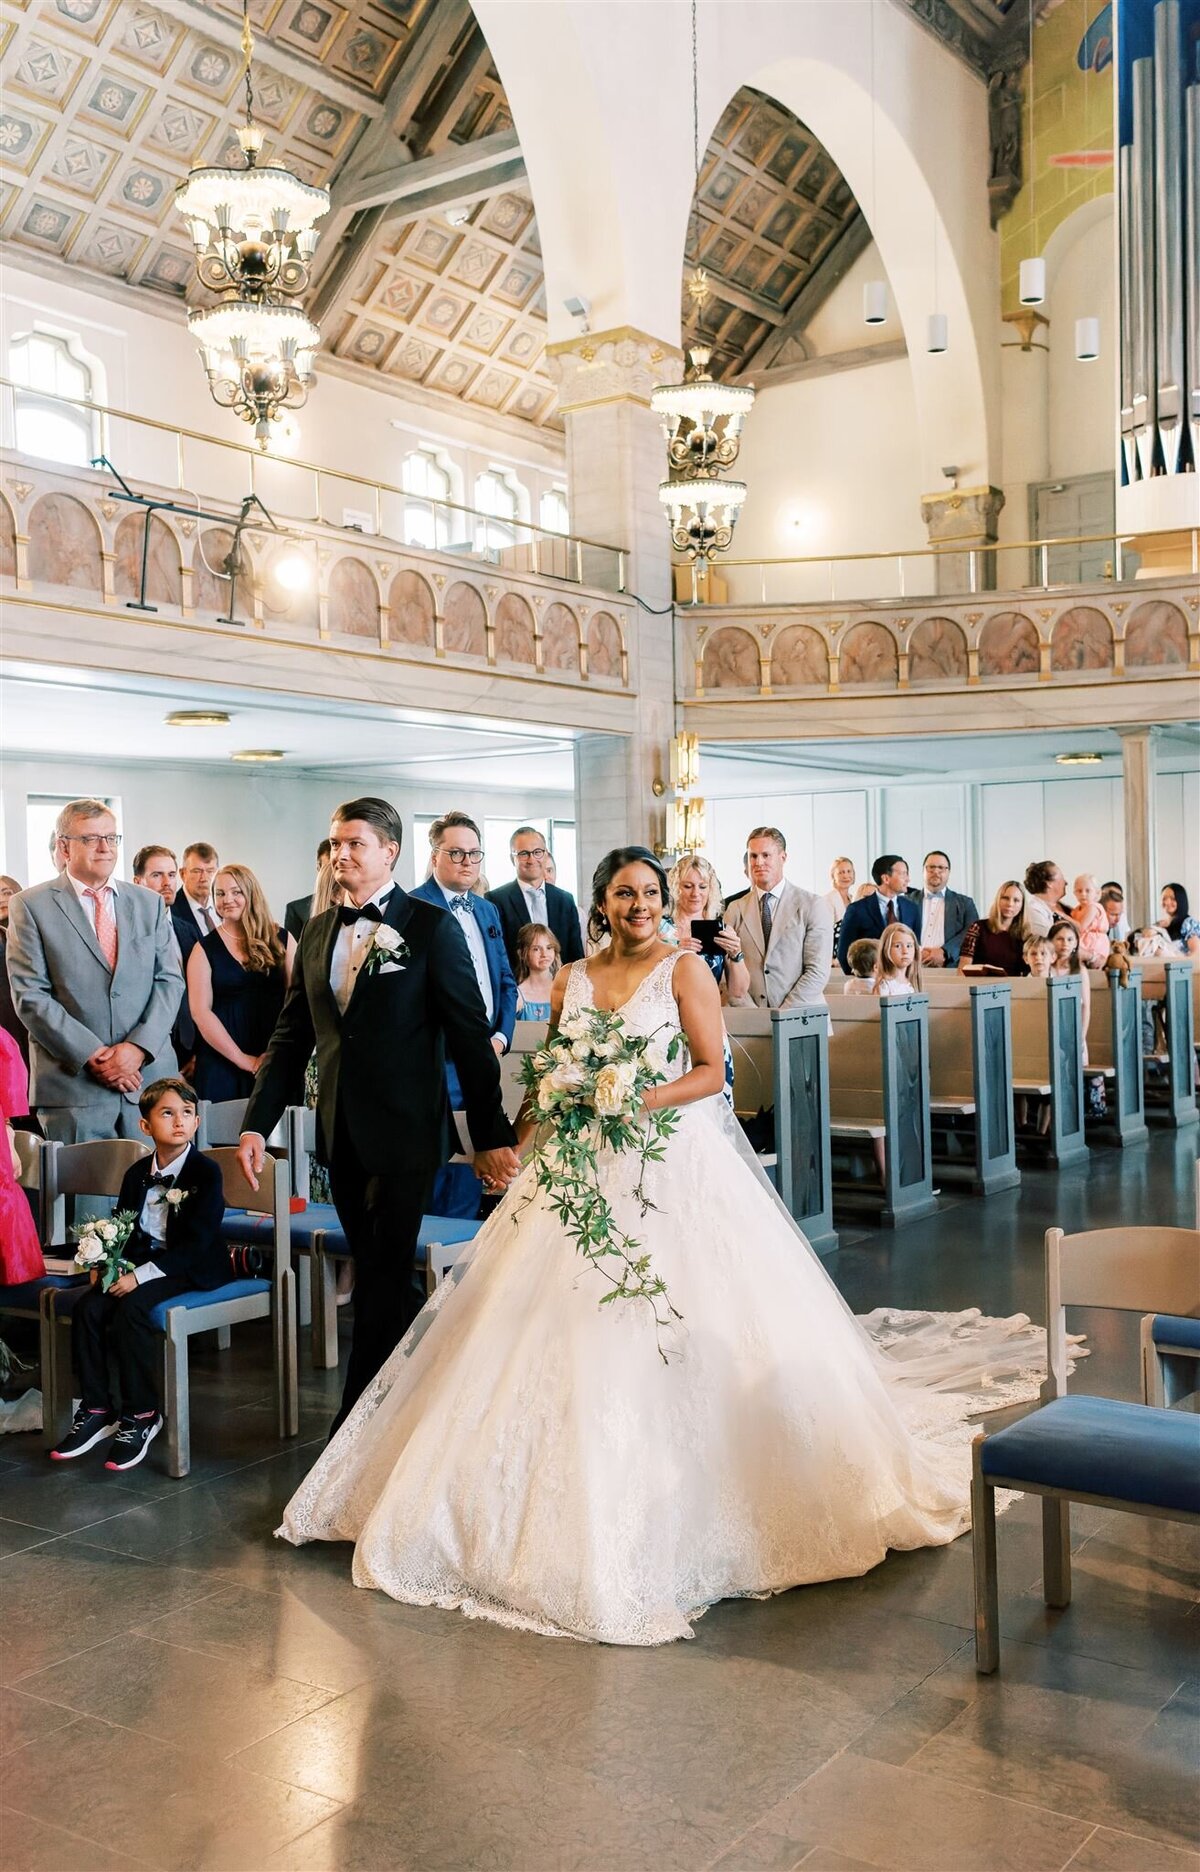 Wedding Photographer Anna Lundgren - helloalora_Wedding at Stallmästaregården in Stockholm Sweden21